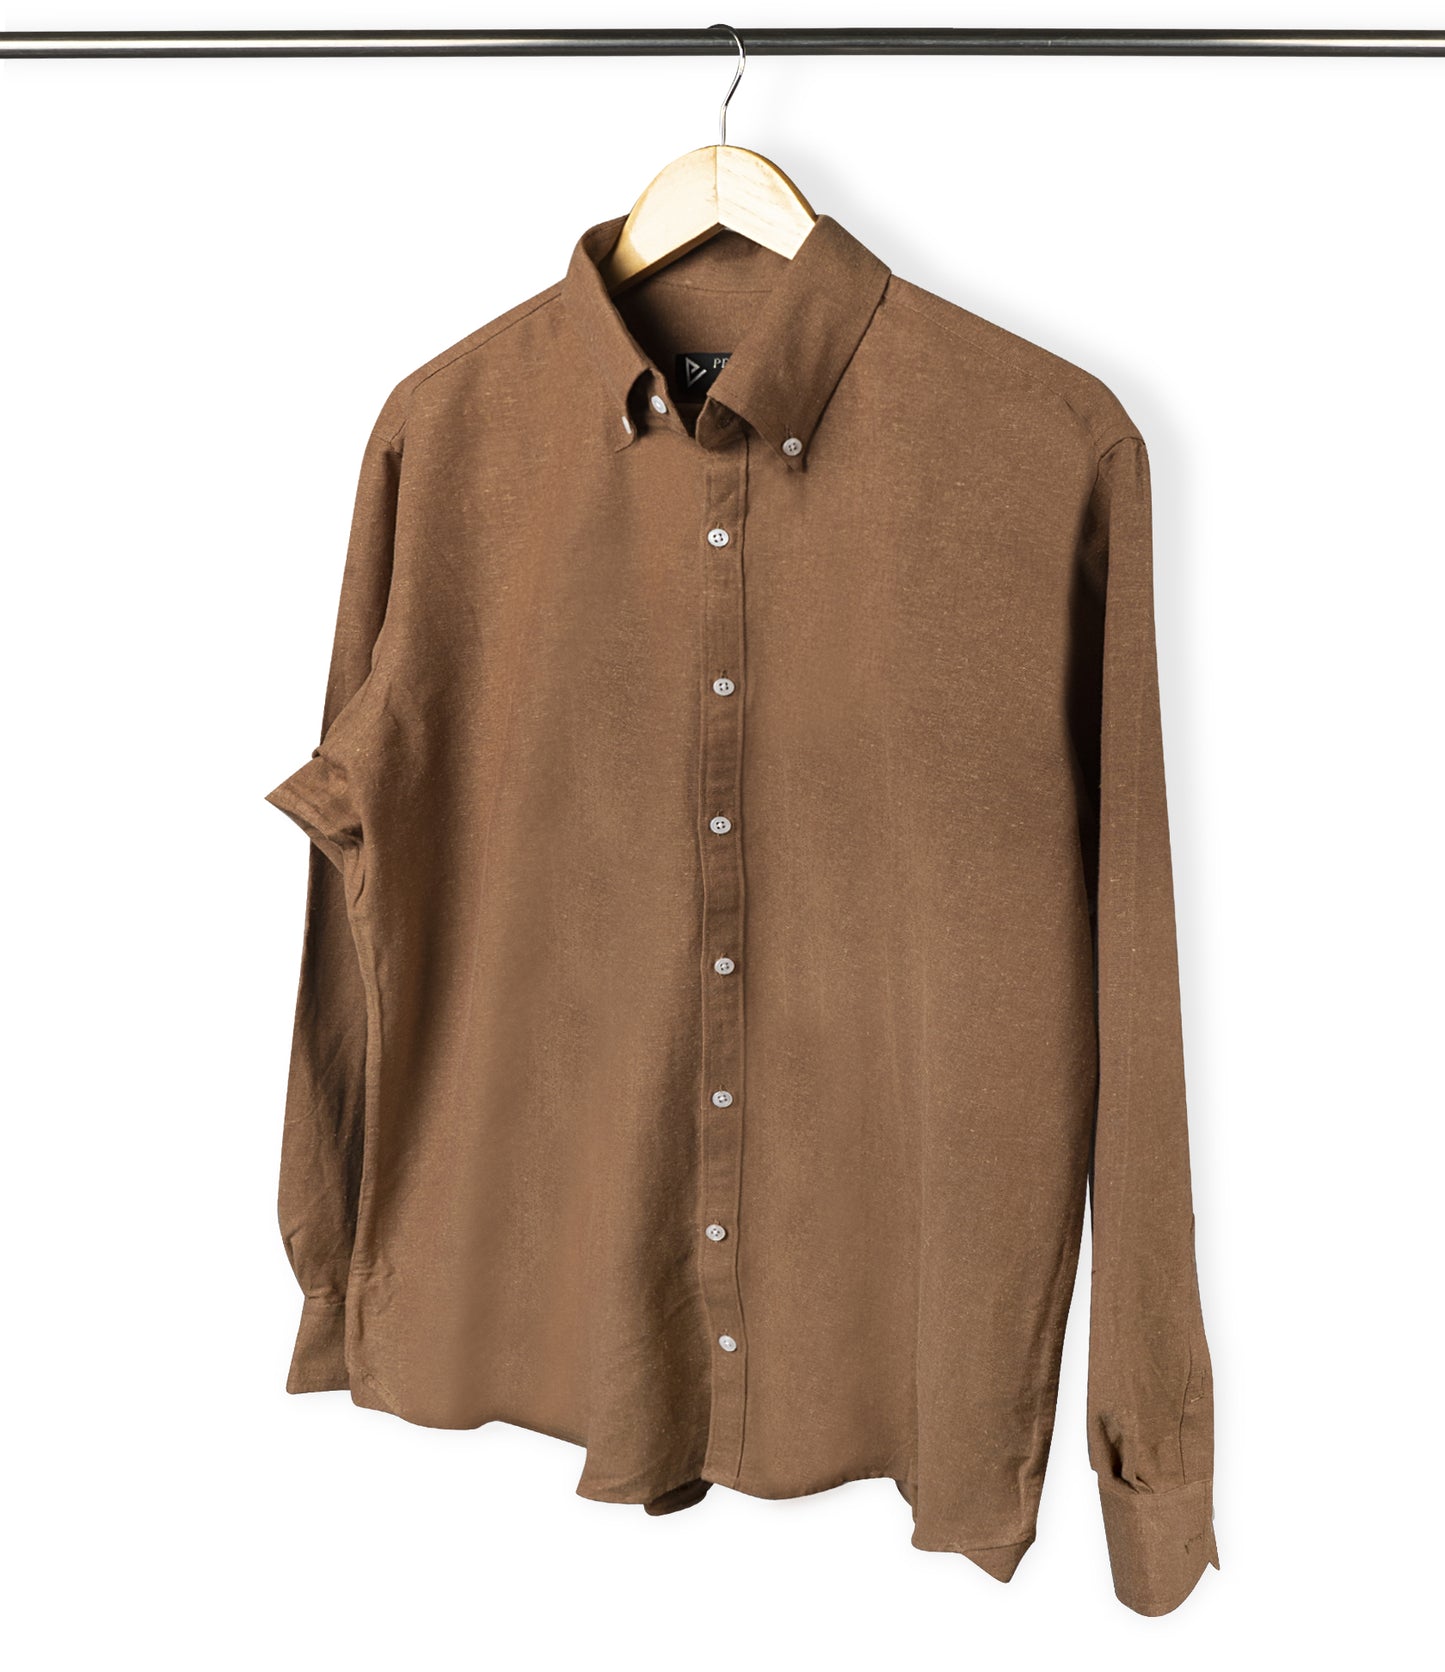 Copper Button Down Linen Shirt - Her's